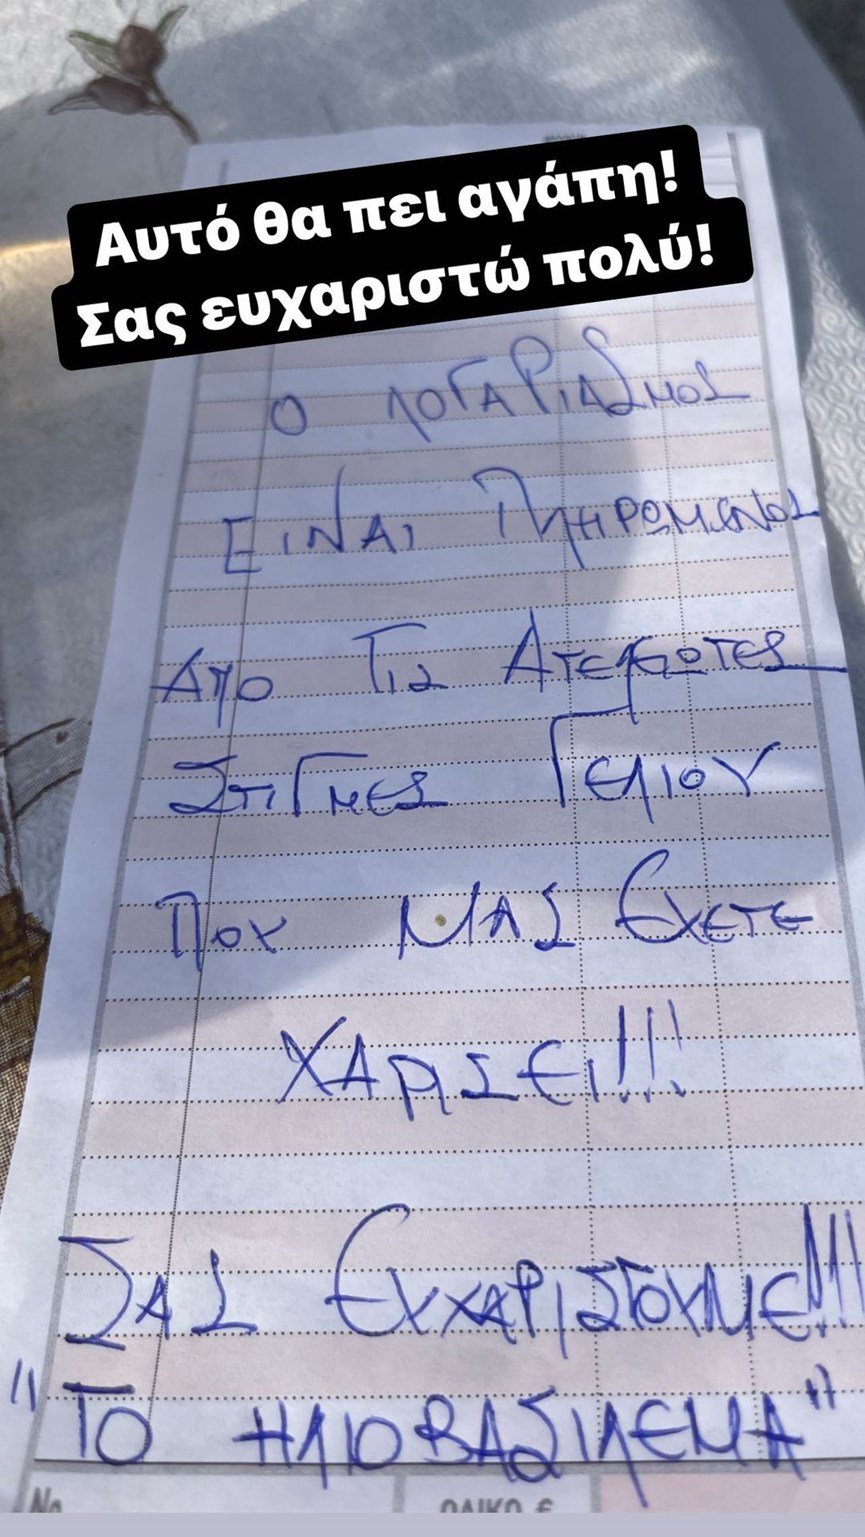 Φωτό-ντοκουμέντο: Ο Μάρκος Σεφερλής δεν πληρώνει στις ταβέρνες! (Pic)